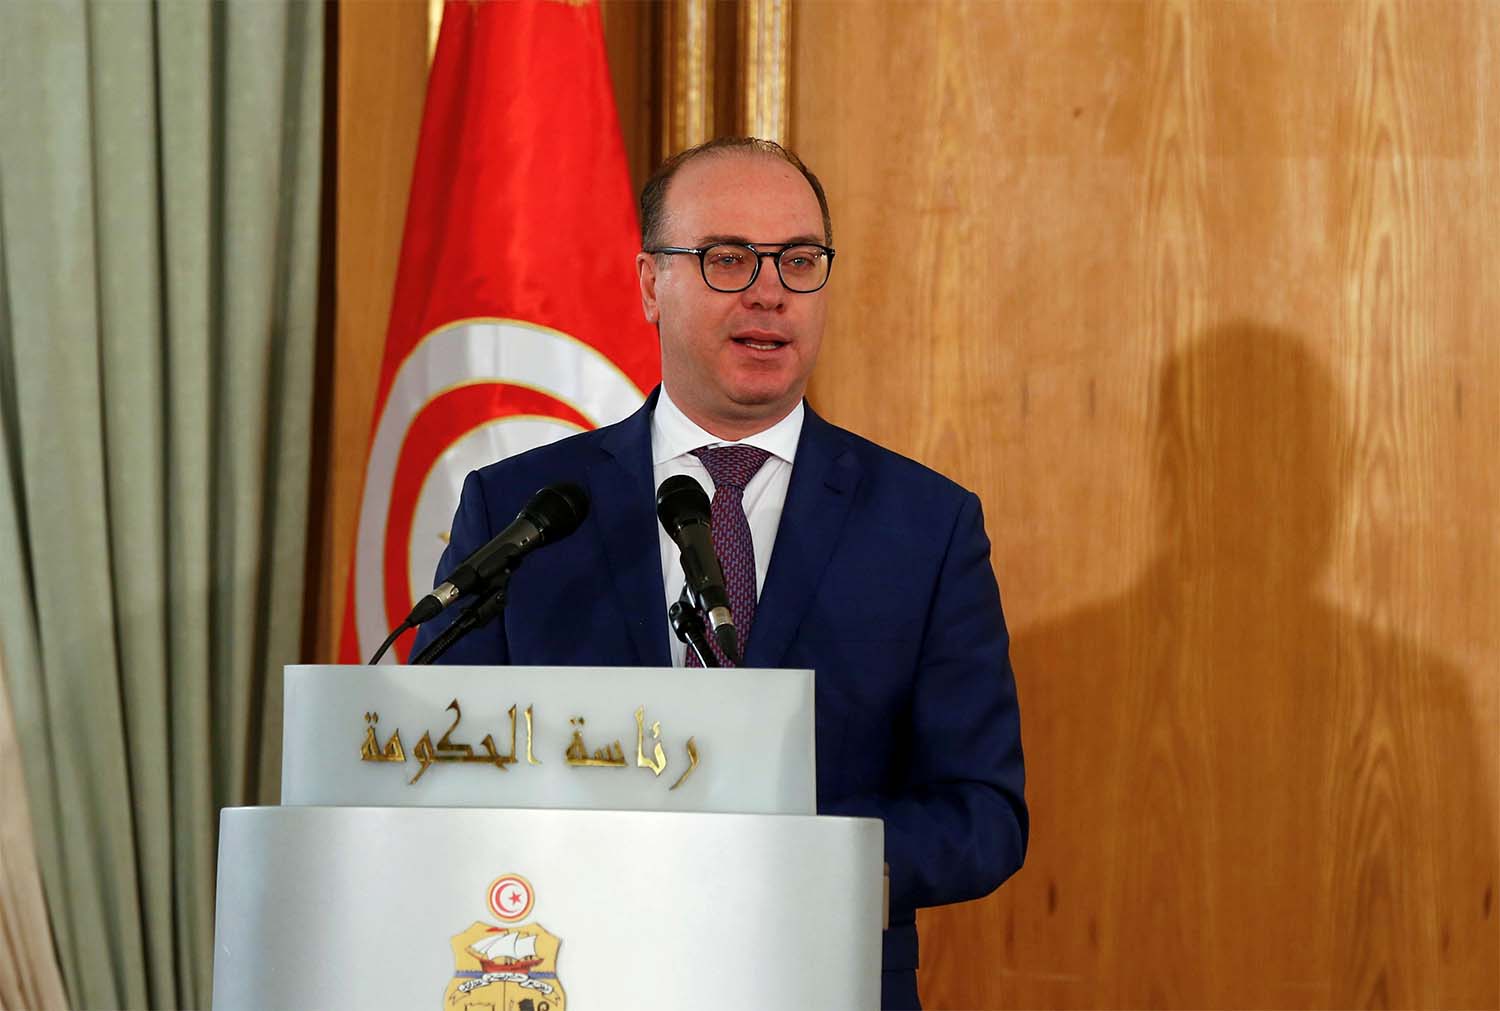 Tunisia's Prime Minister Elyes Fakhfakh